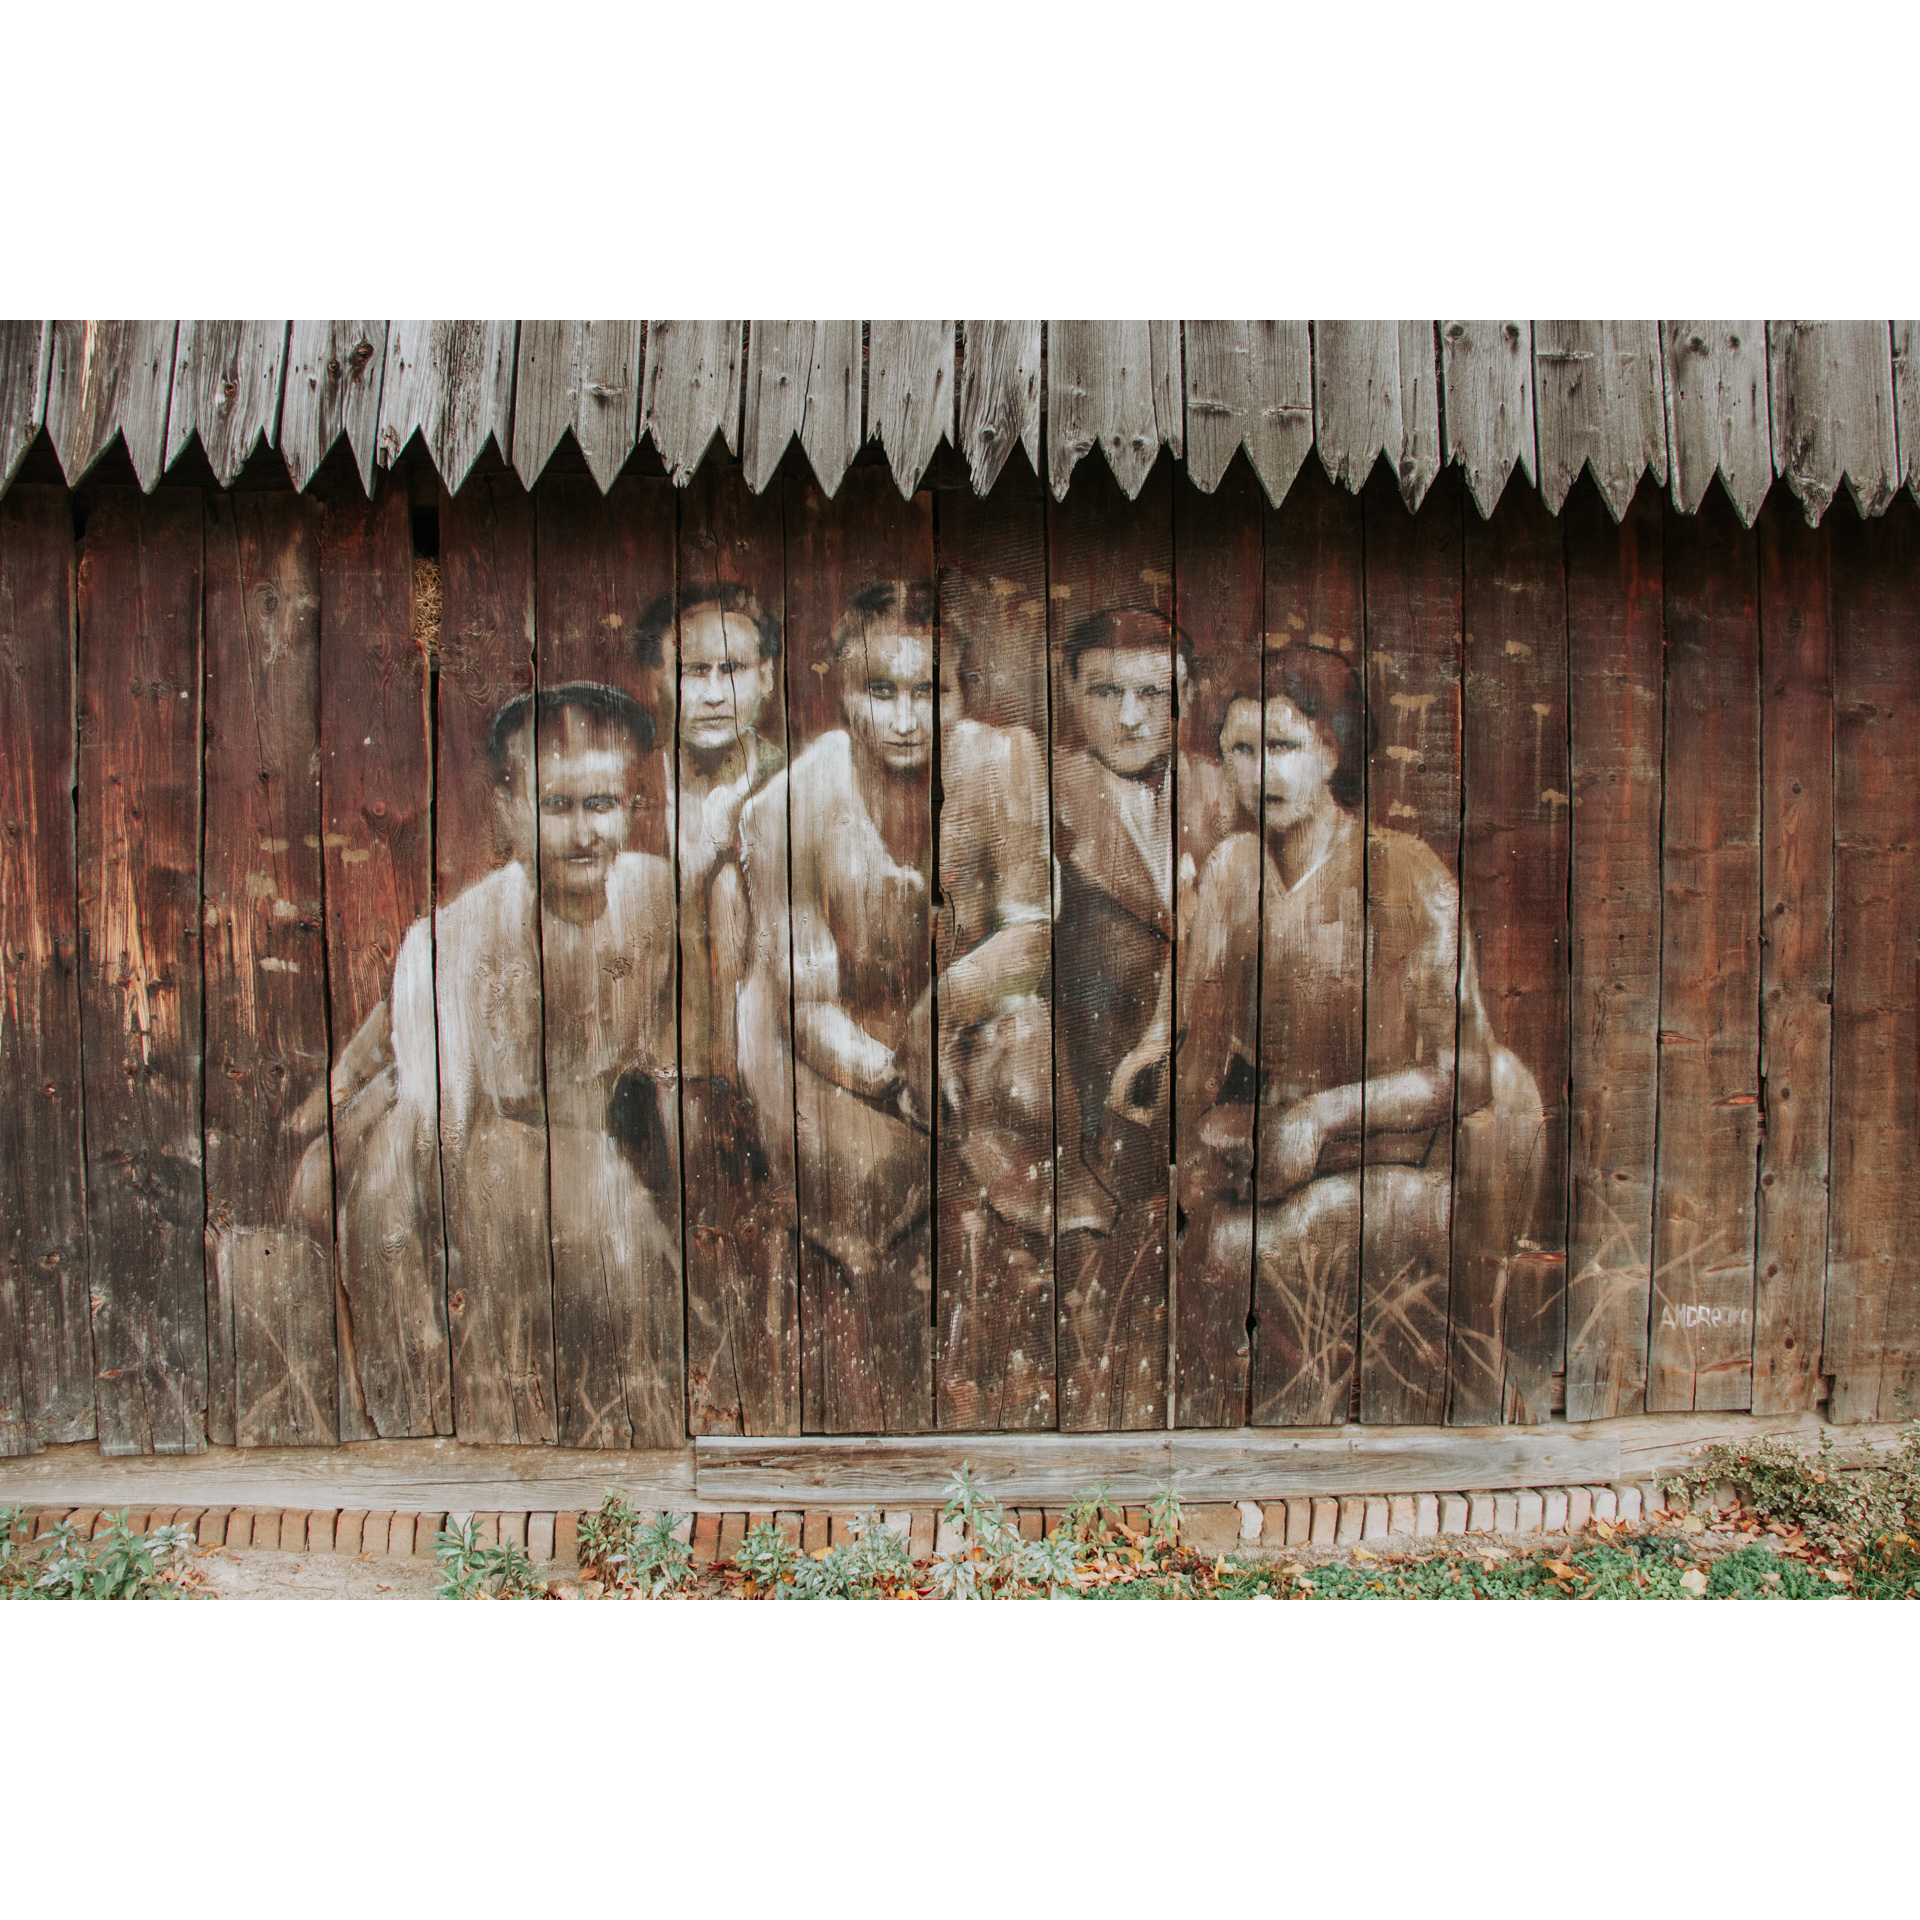 Rysunek w brązowo-beżowych barwach na drewnianej ścianie przedstawiający 3 kobiety z przodu i dwóch mężczyzn z tyłu